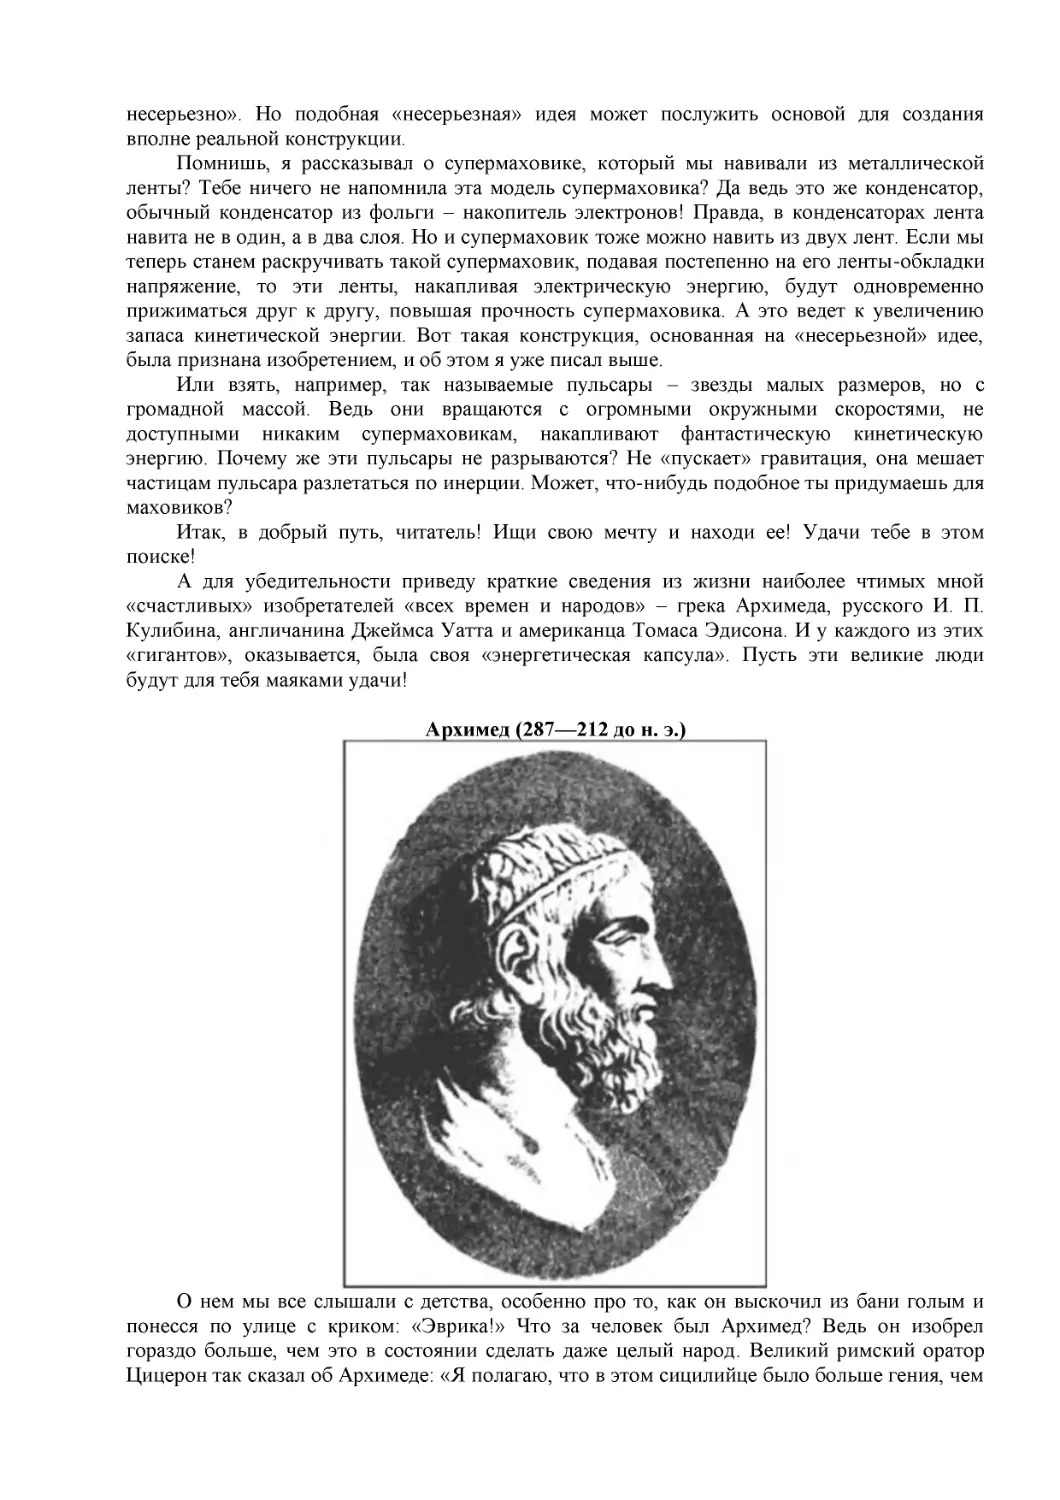 Архимед (287—212 до н. э.)